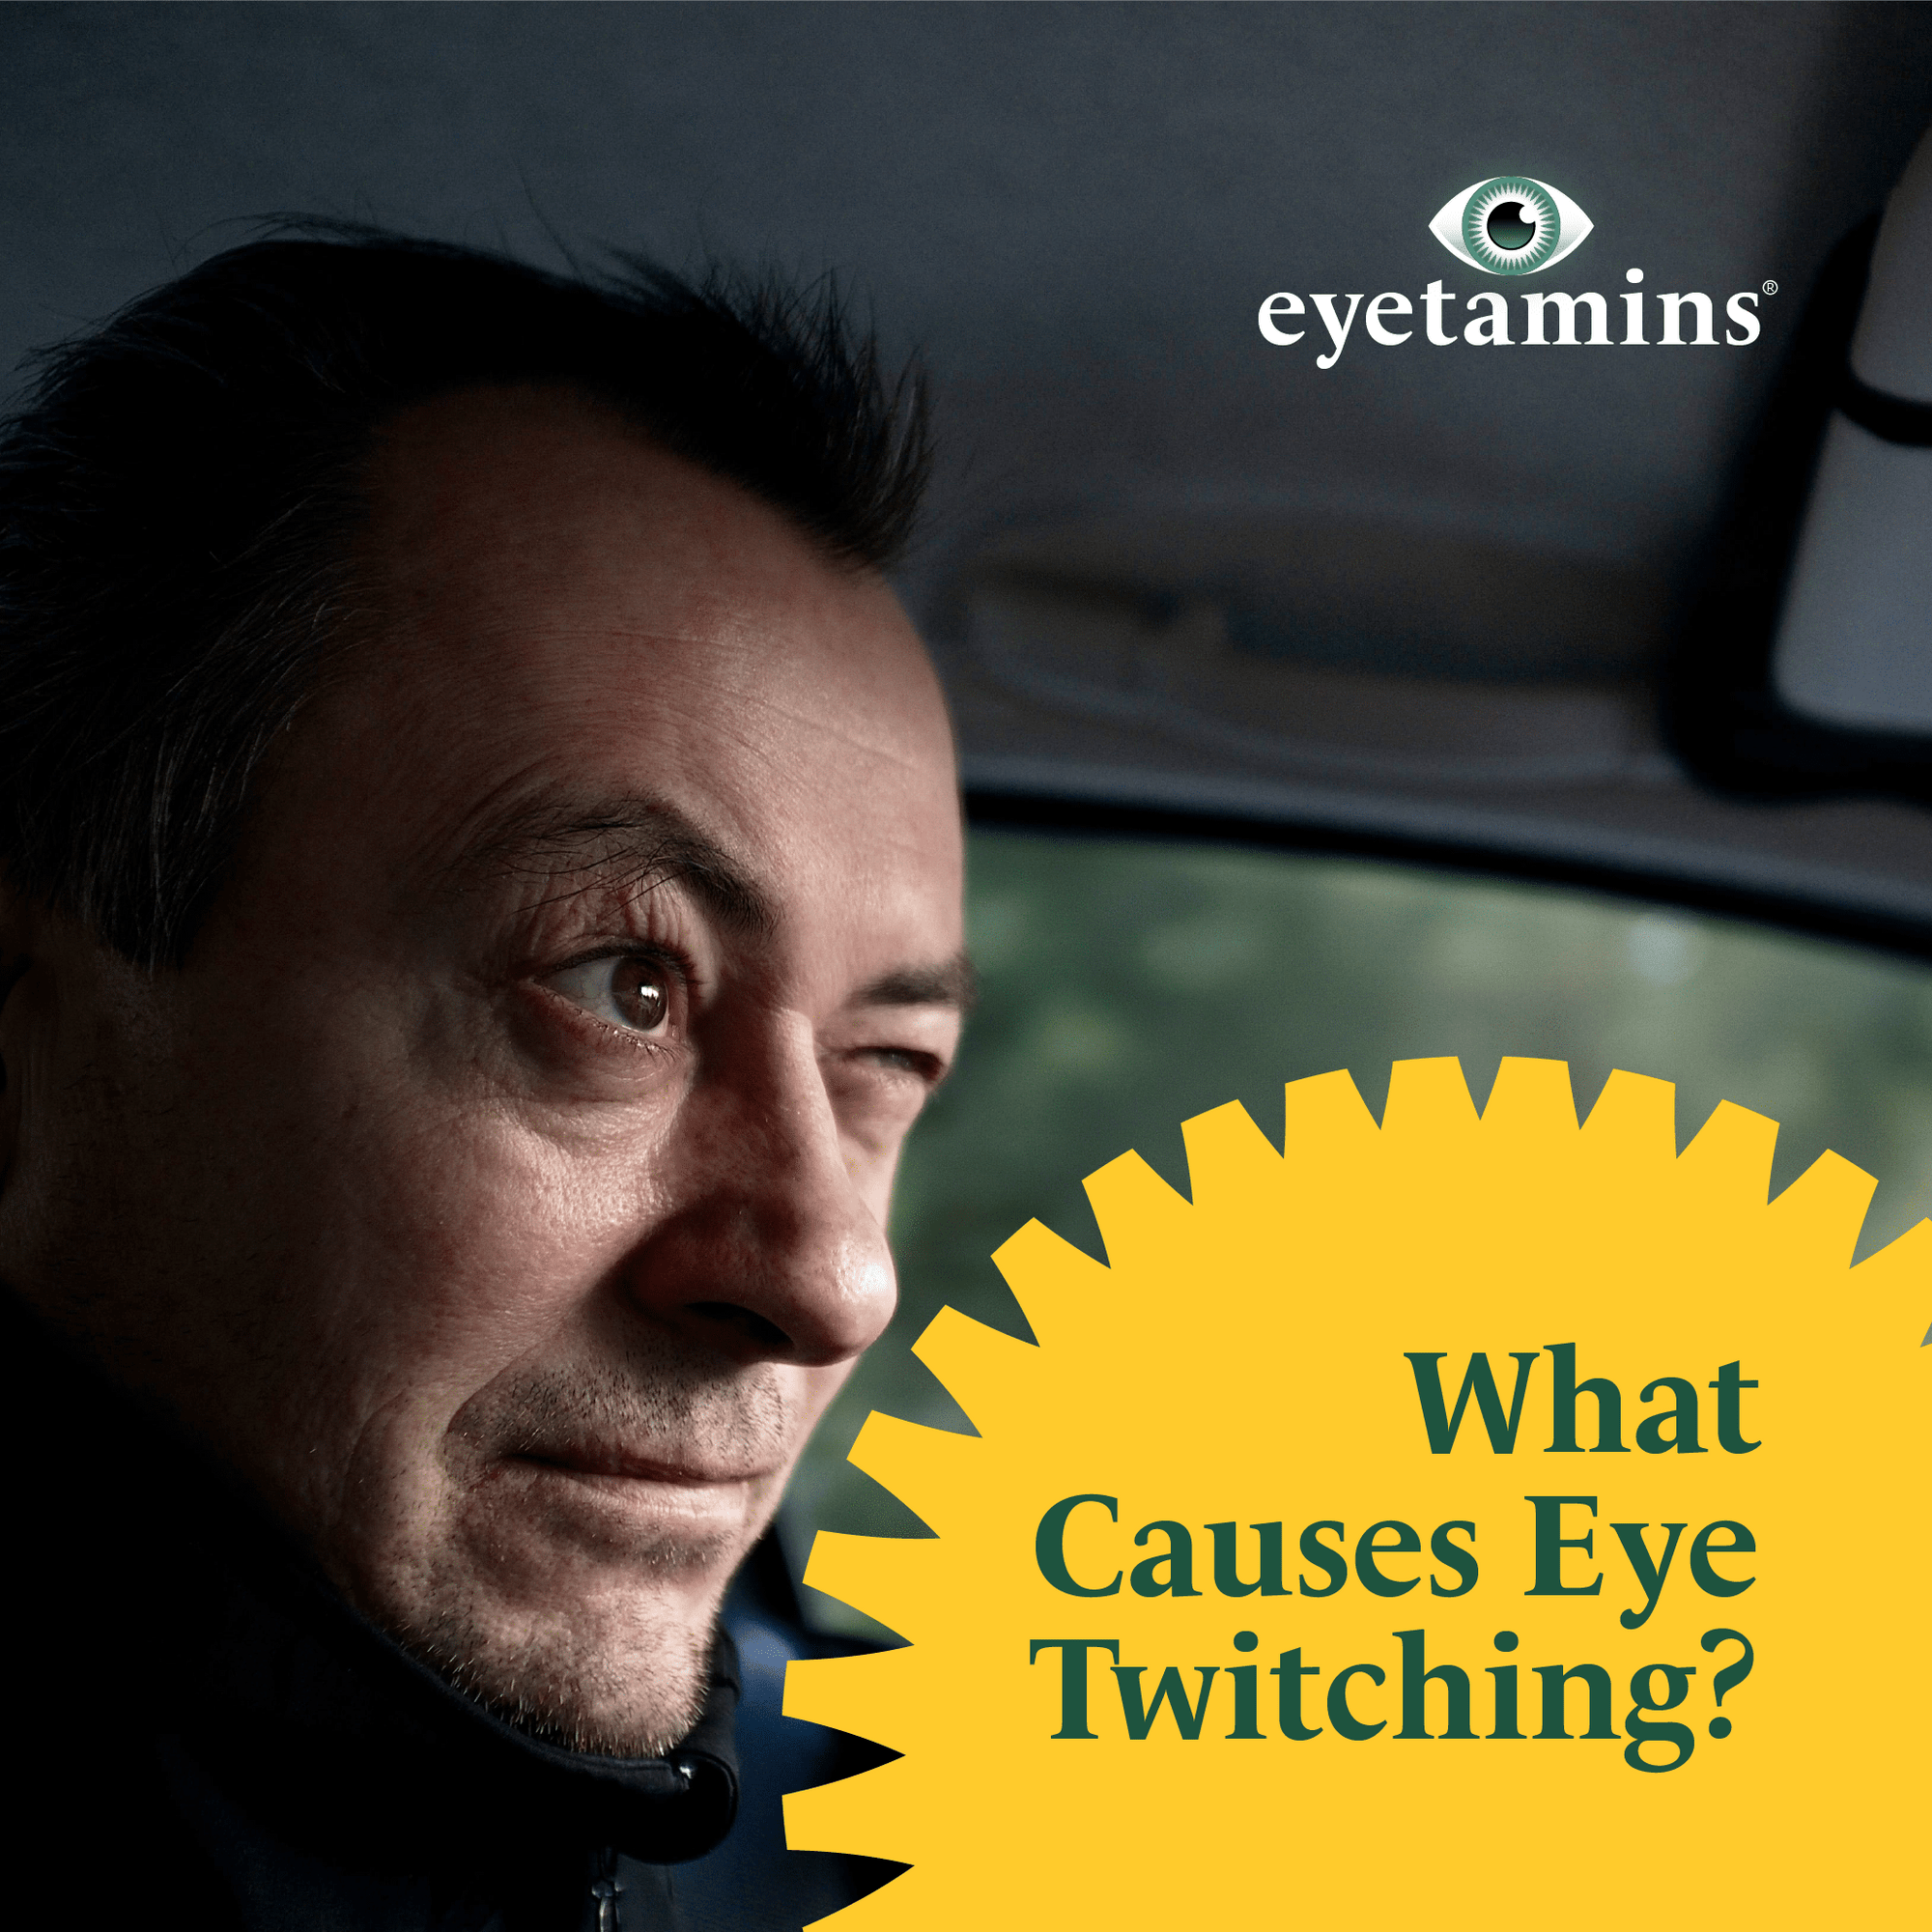 Eyetamins - What Causes Eye Twitching?